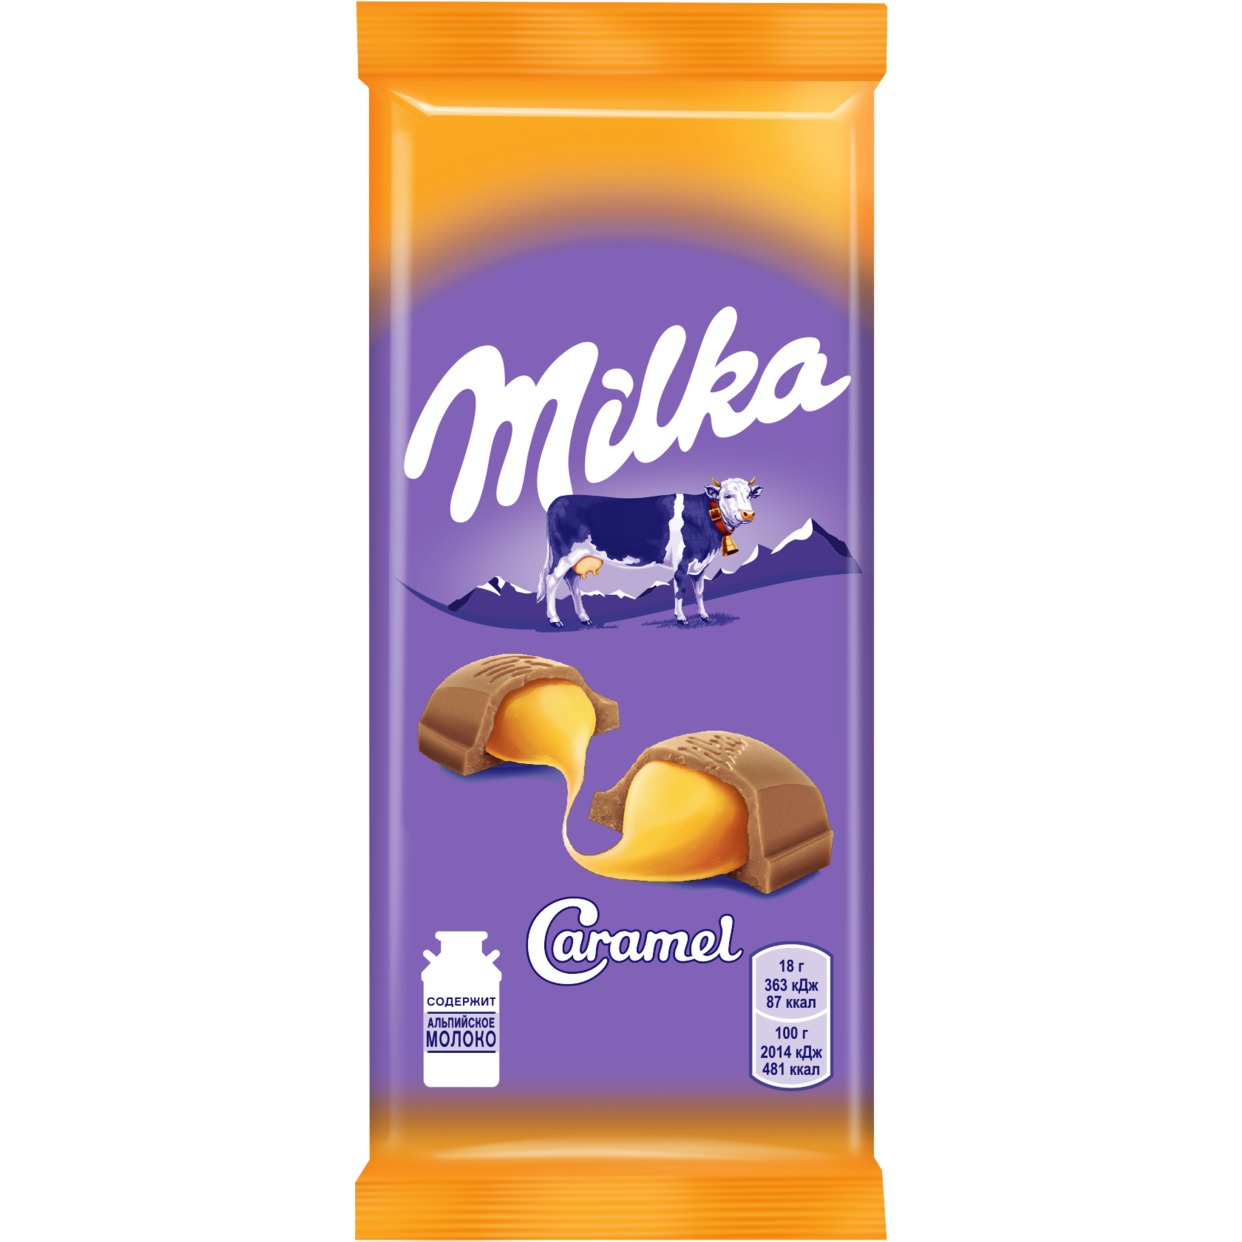 Шоколад Milka, молочный, с карамельной начинкой, 90 г по акции в Пятерочке